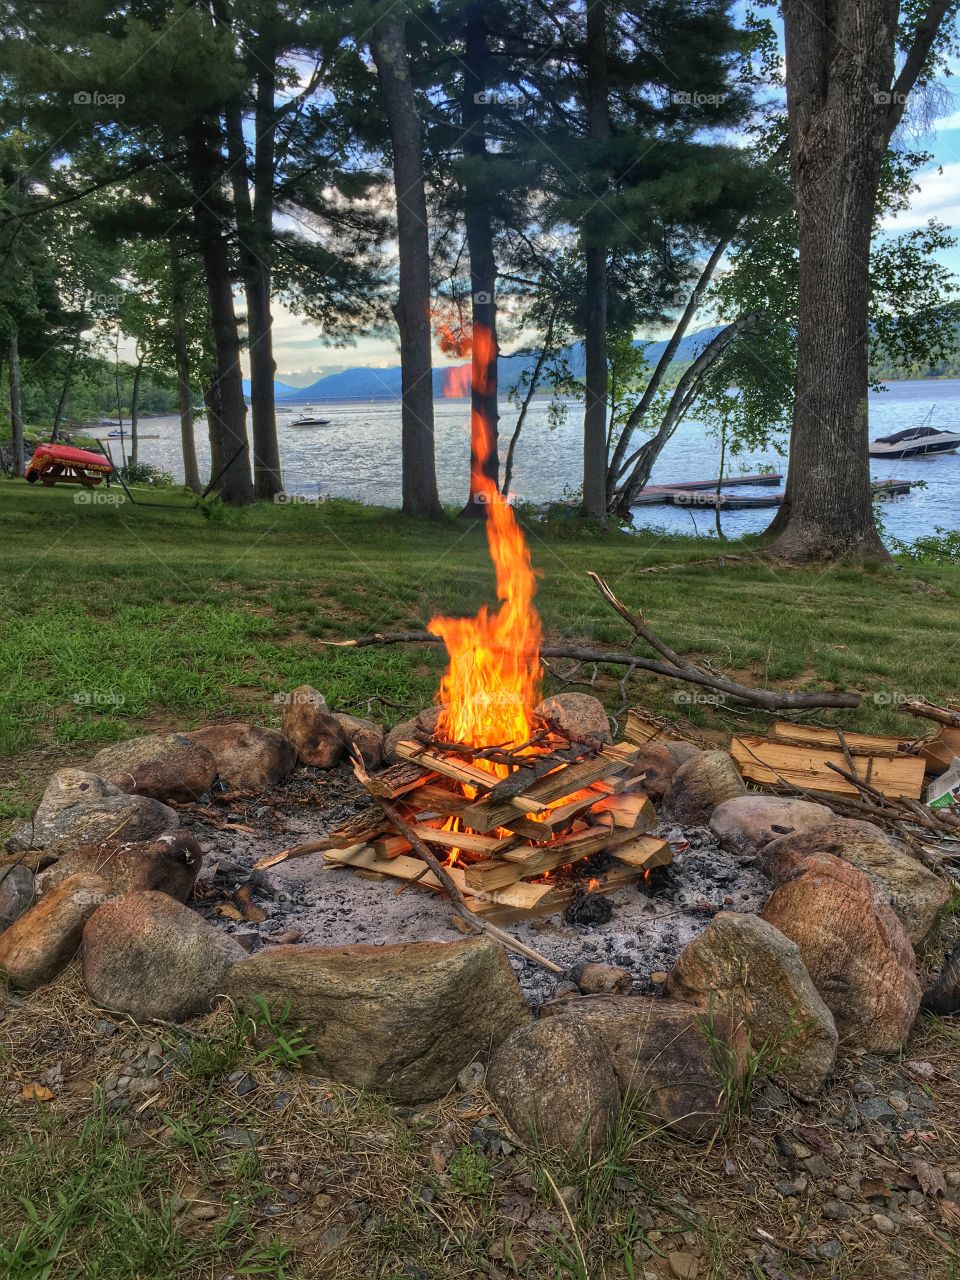 Bonfire at the Lake